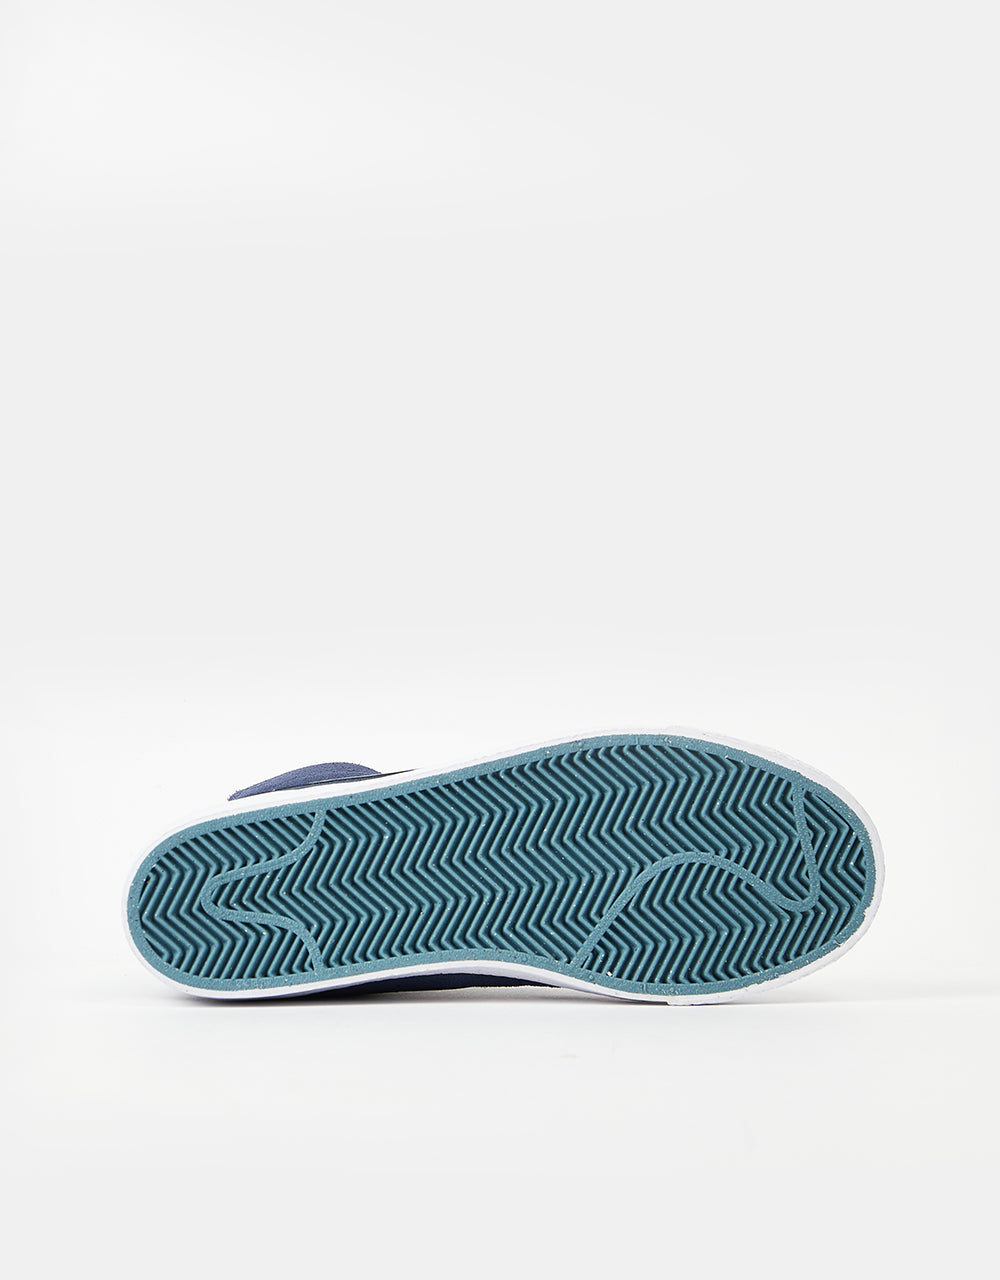 Nike SB Zoom Blazer Mid Skate Shoes - Midnight Navy/Noise Aqua-Midnight Navy